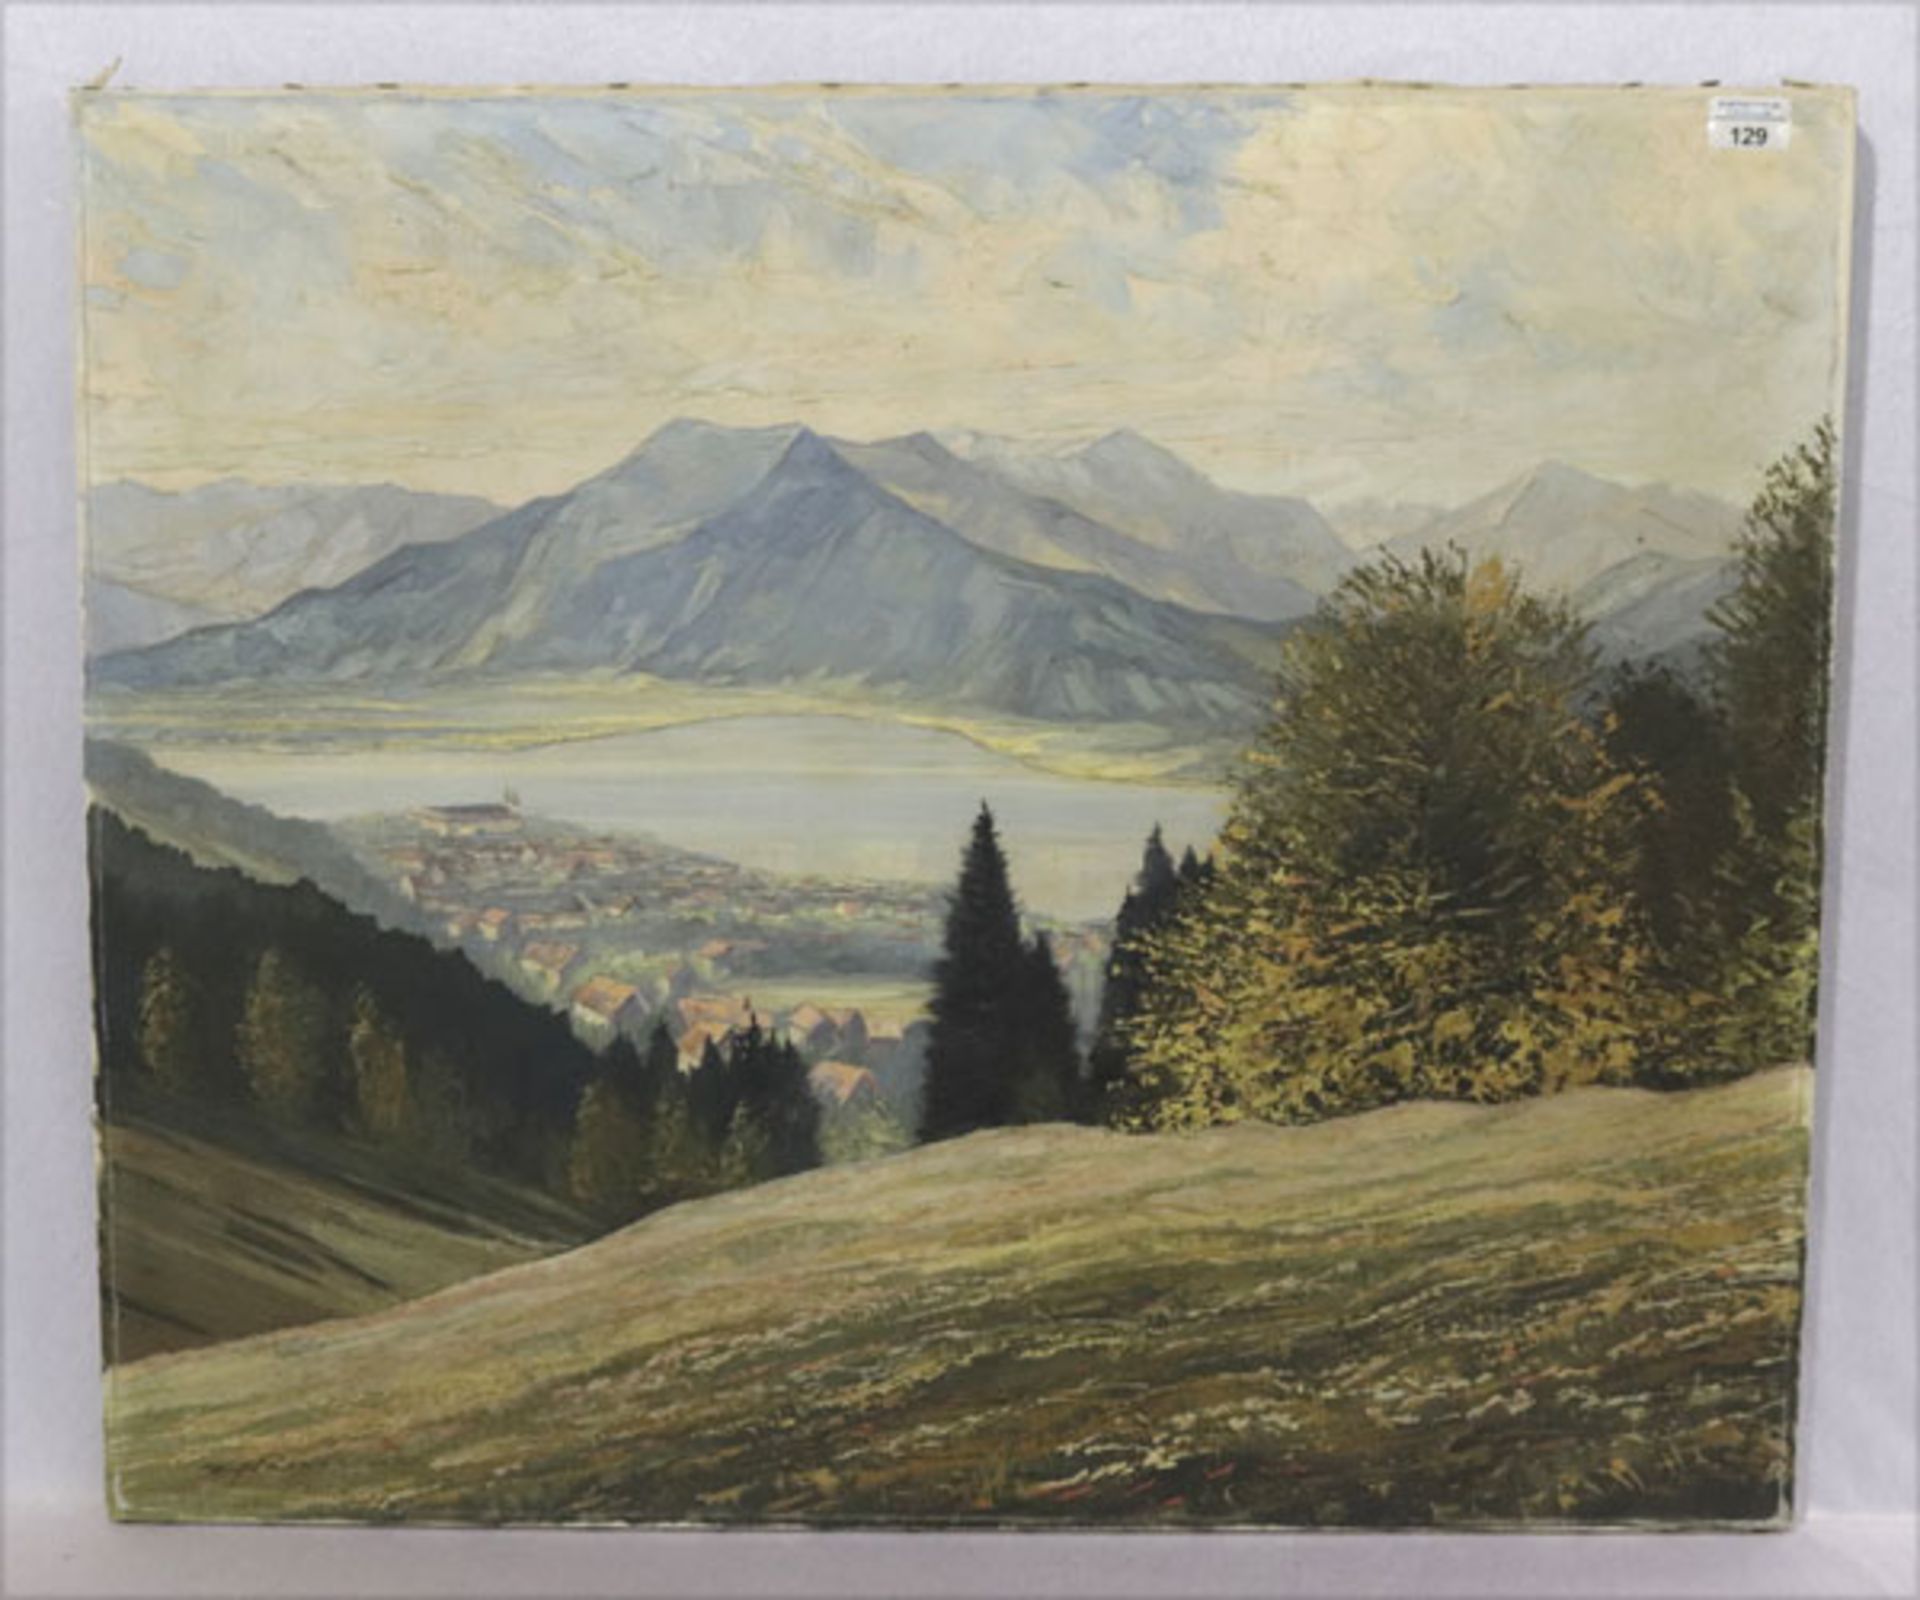 Gemälde ÖL/LW 'Blick auf den Tegernsee mit Kloster Tegernsee', undeutlich signiert, ohne Rahmen 70